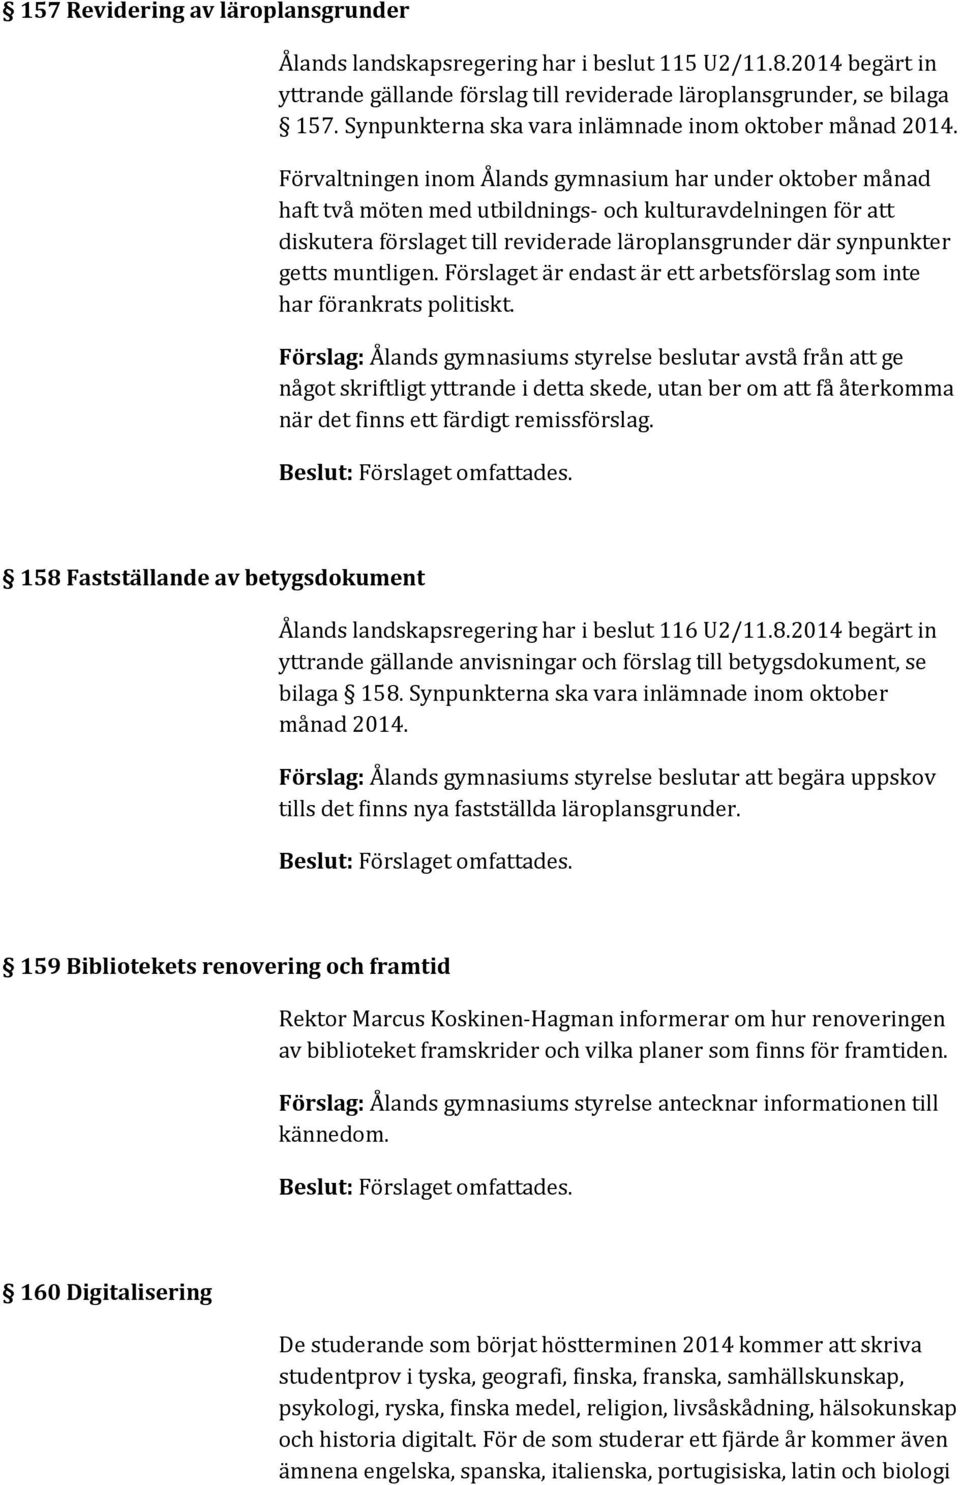 Förvaltningen inom Ålands gymnasium har under oktober månad haft två möten med utbildnings- och kulturavdelningen för att diskutera förslaget till reviderade läroplansgrunder där synpunkter getts